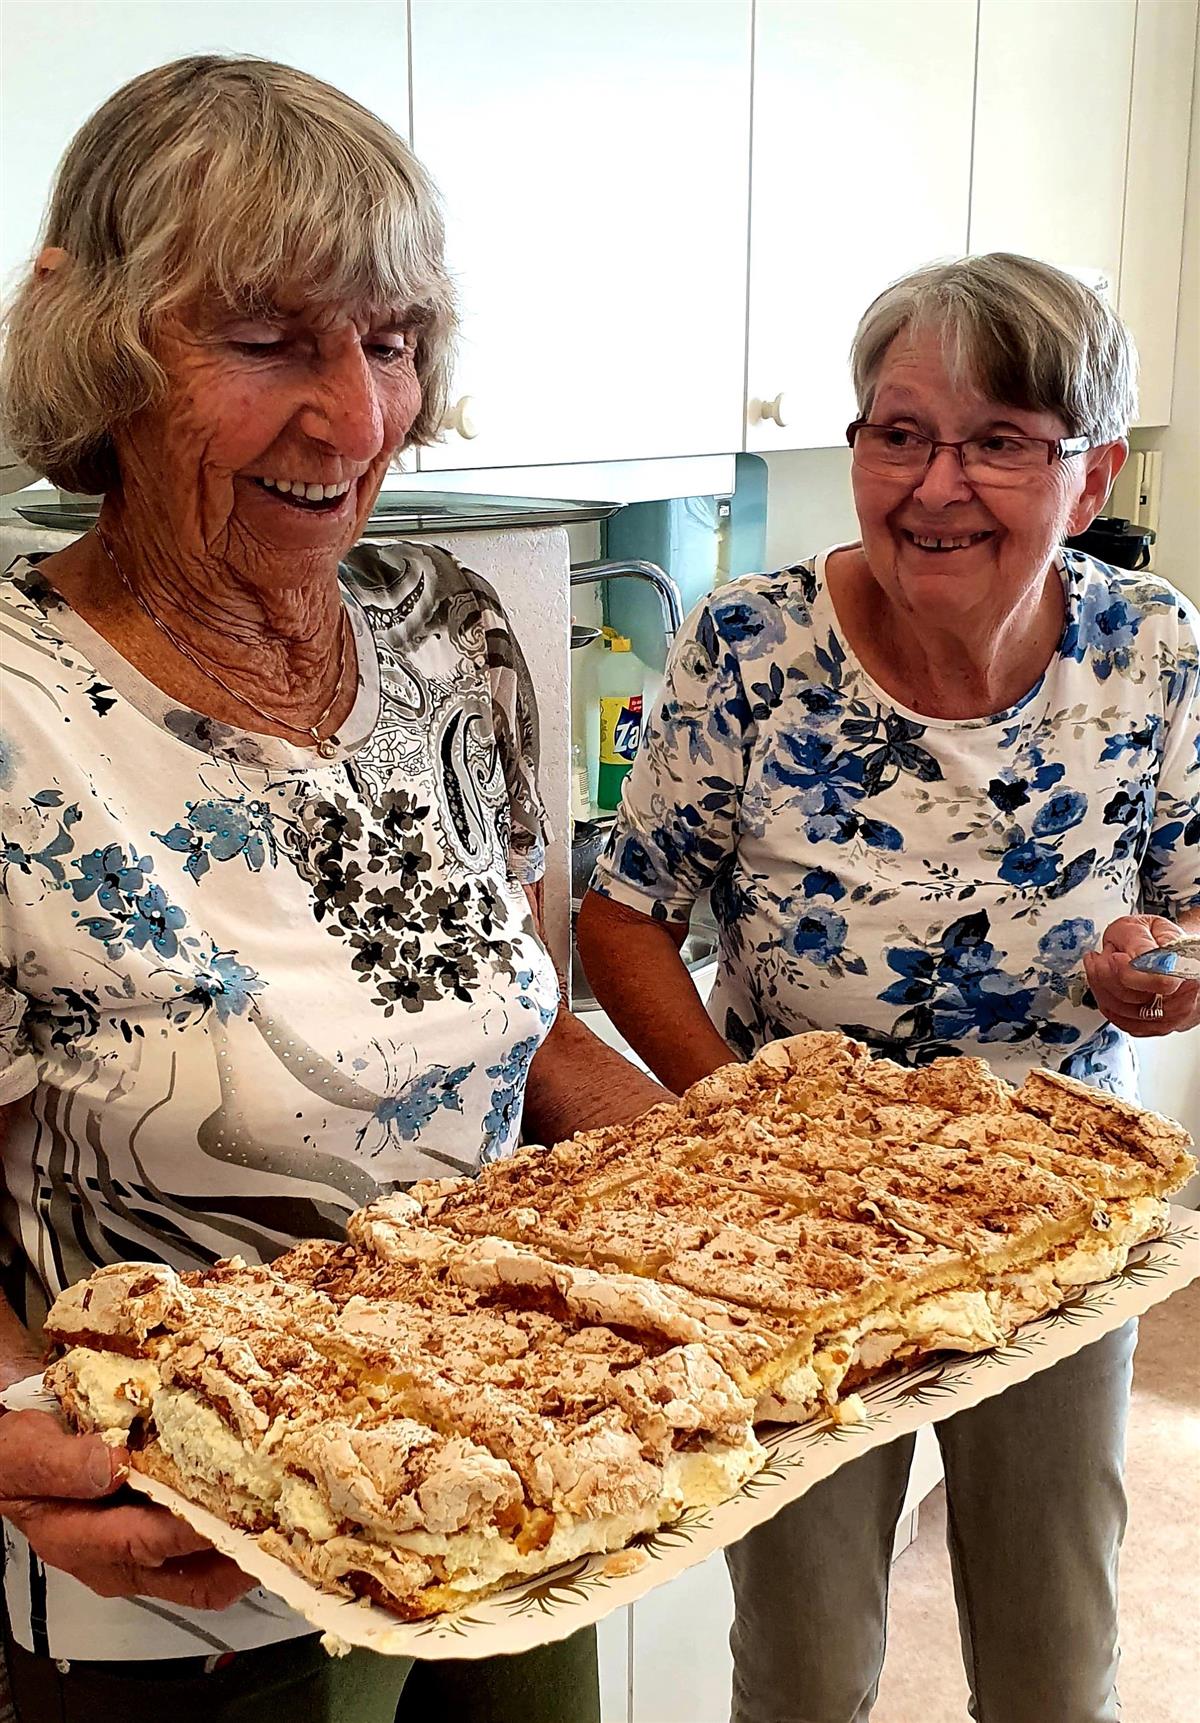 To eldre damer viser stolt fram eit nydeleg bakverk av typen "verdas beste". - Klikk for stort bilete